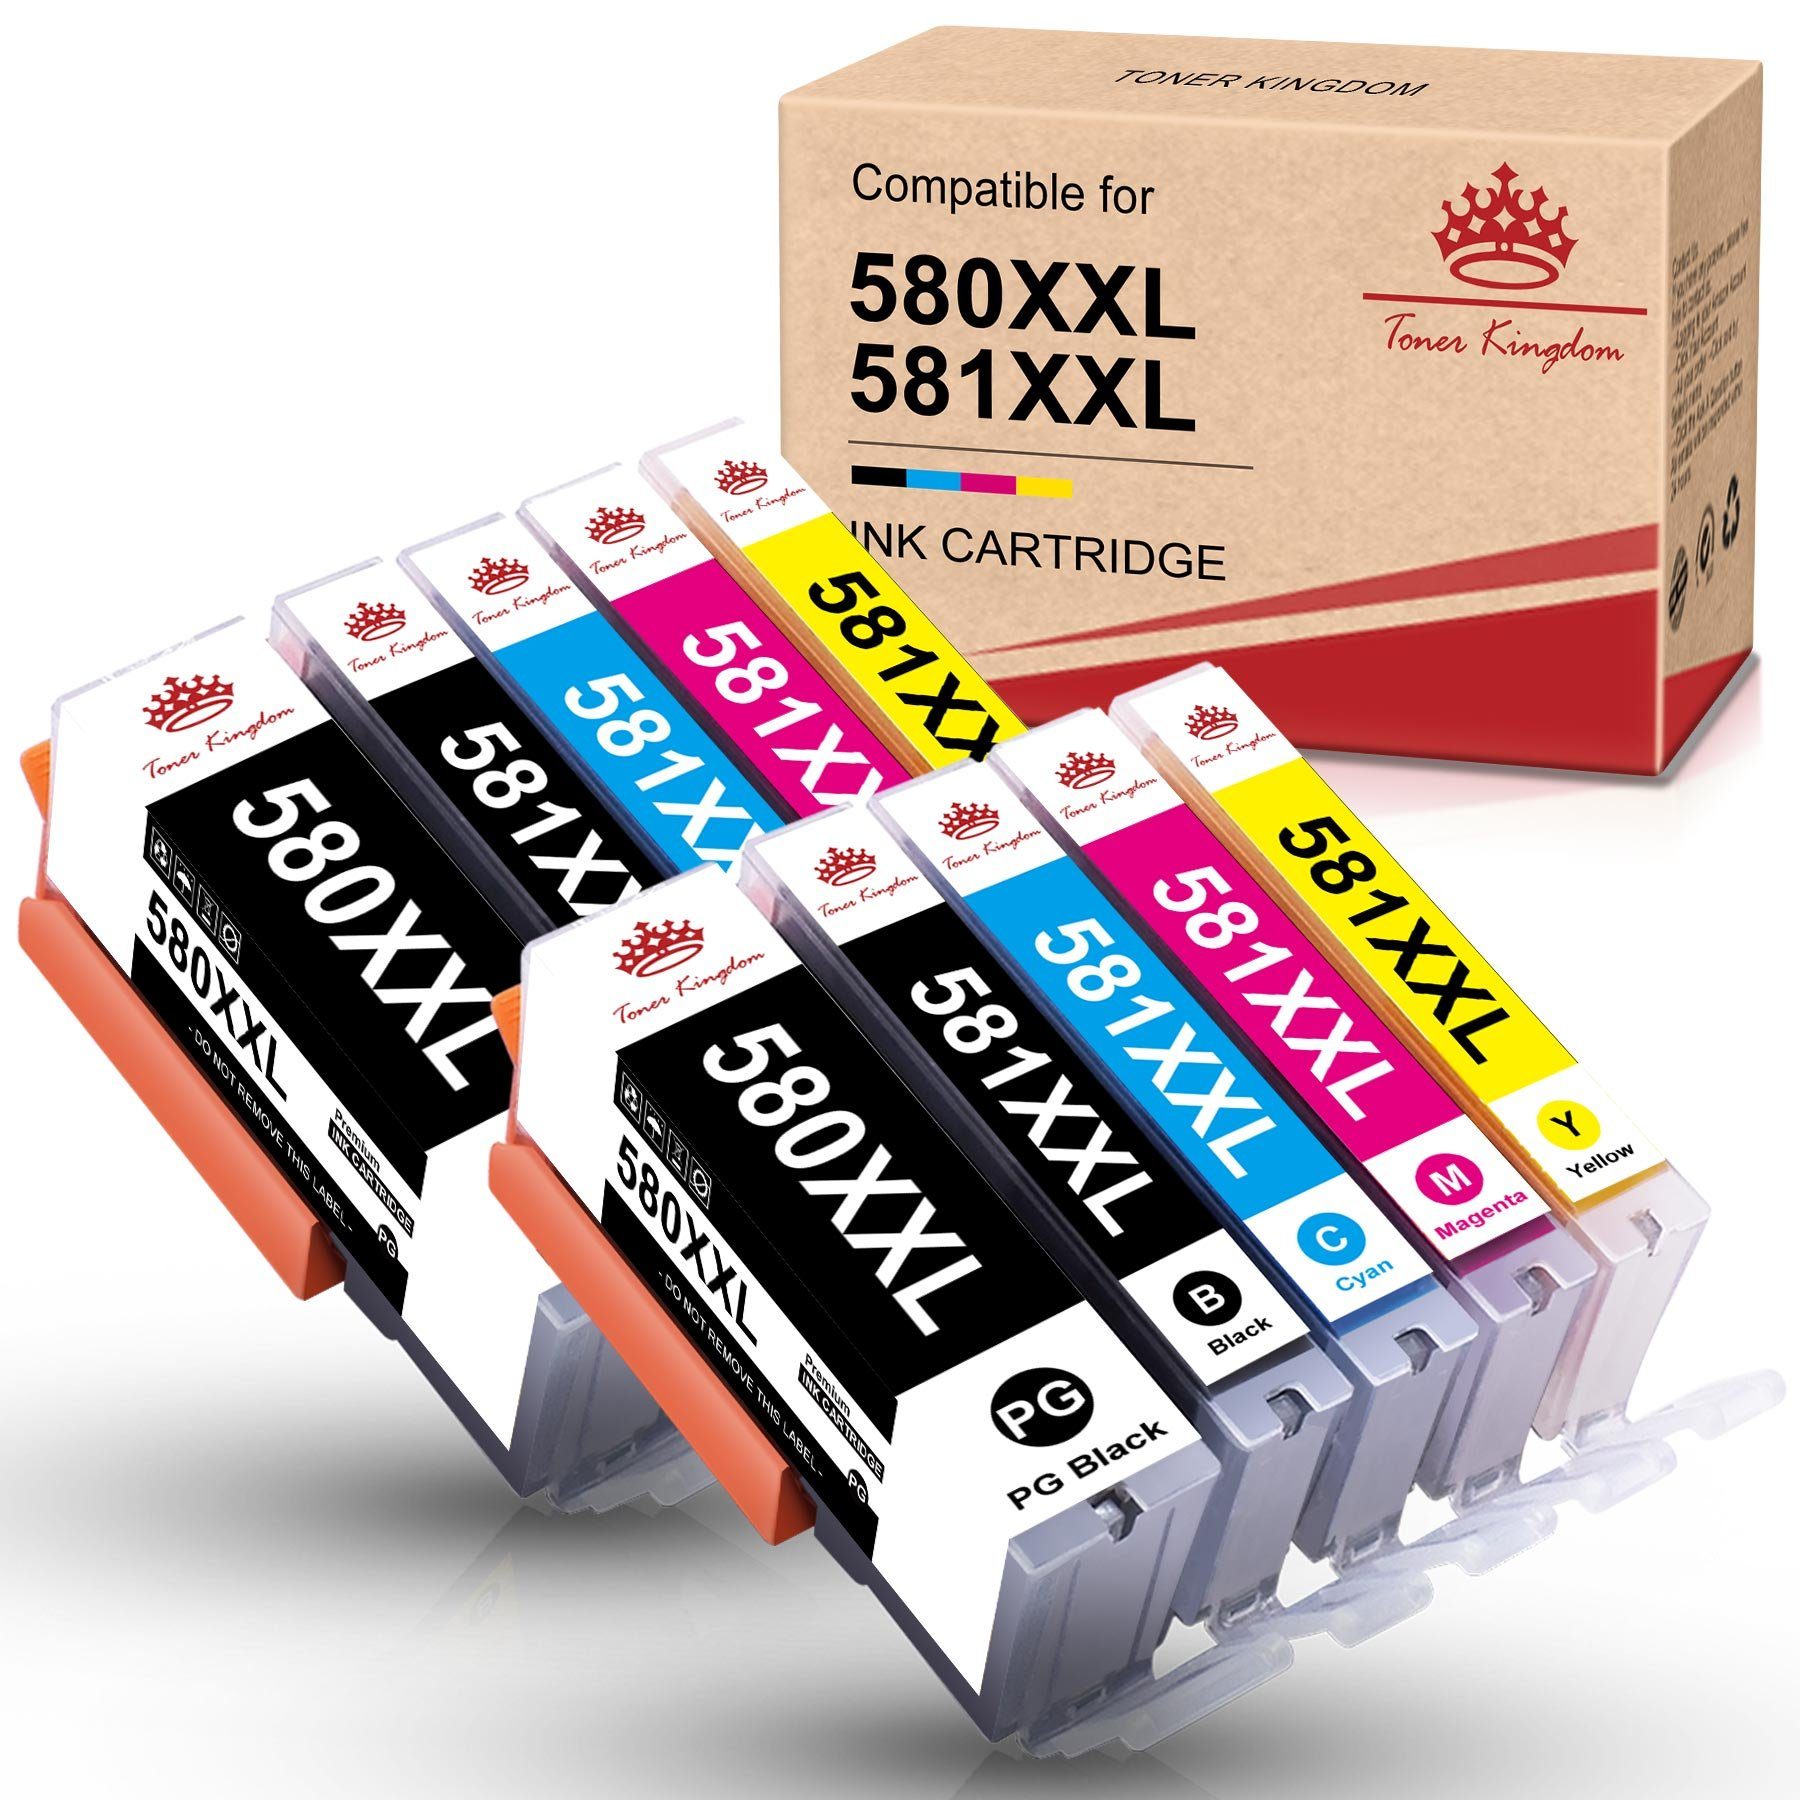 Toner Kingdom 10pk für Canon pgi-580xl cli-581 xl Tintenpatrone (Mit Chip XXL, TR8550 TS6150 TS6250 TS8250 TS8150 TR7550)